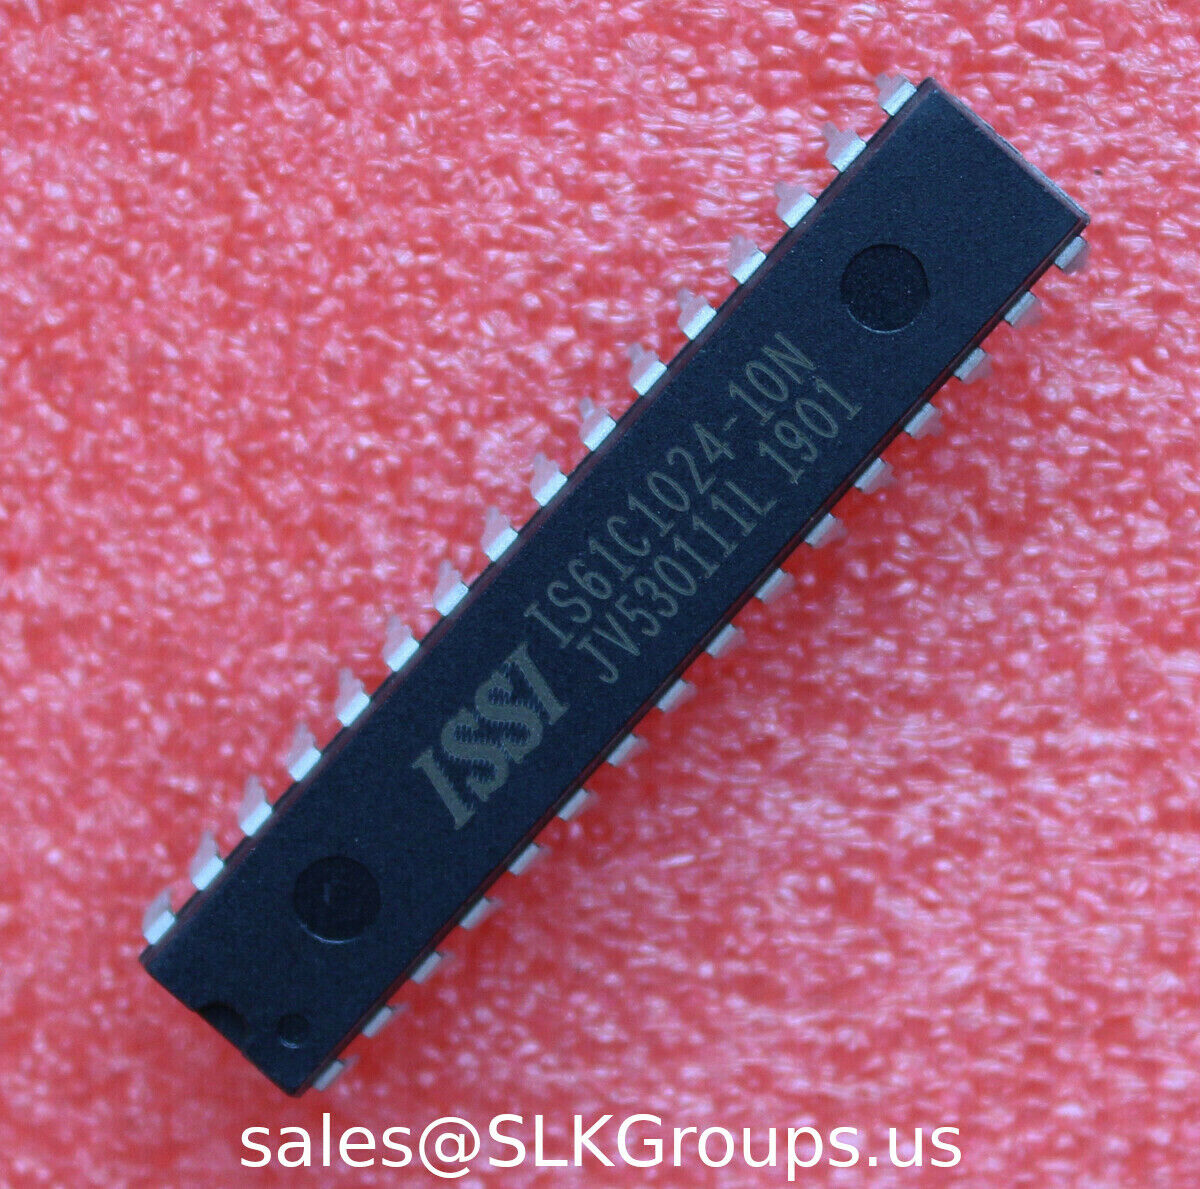 1 IS61C1024-10N IS61C1024 128K x 8 HIGH-SPEED CMOS STATIC RAM DIP US Seller~~